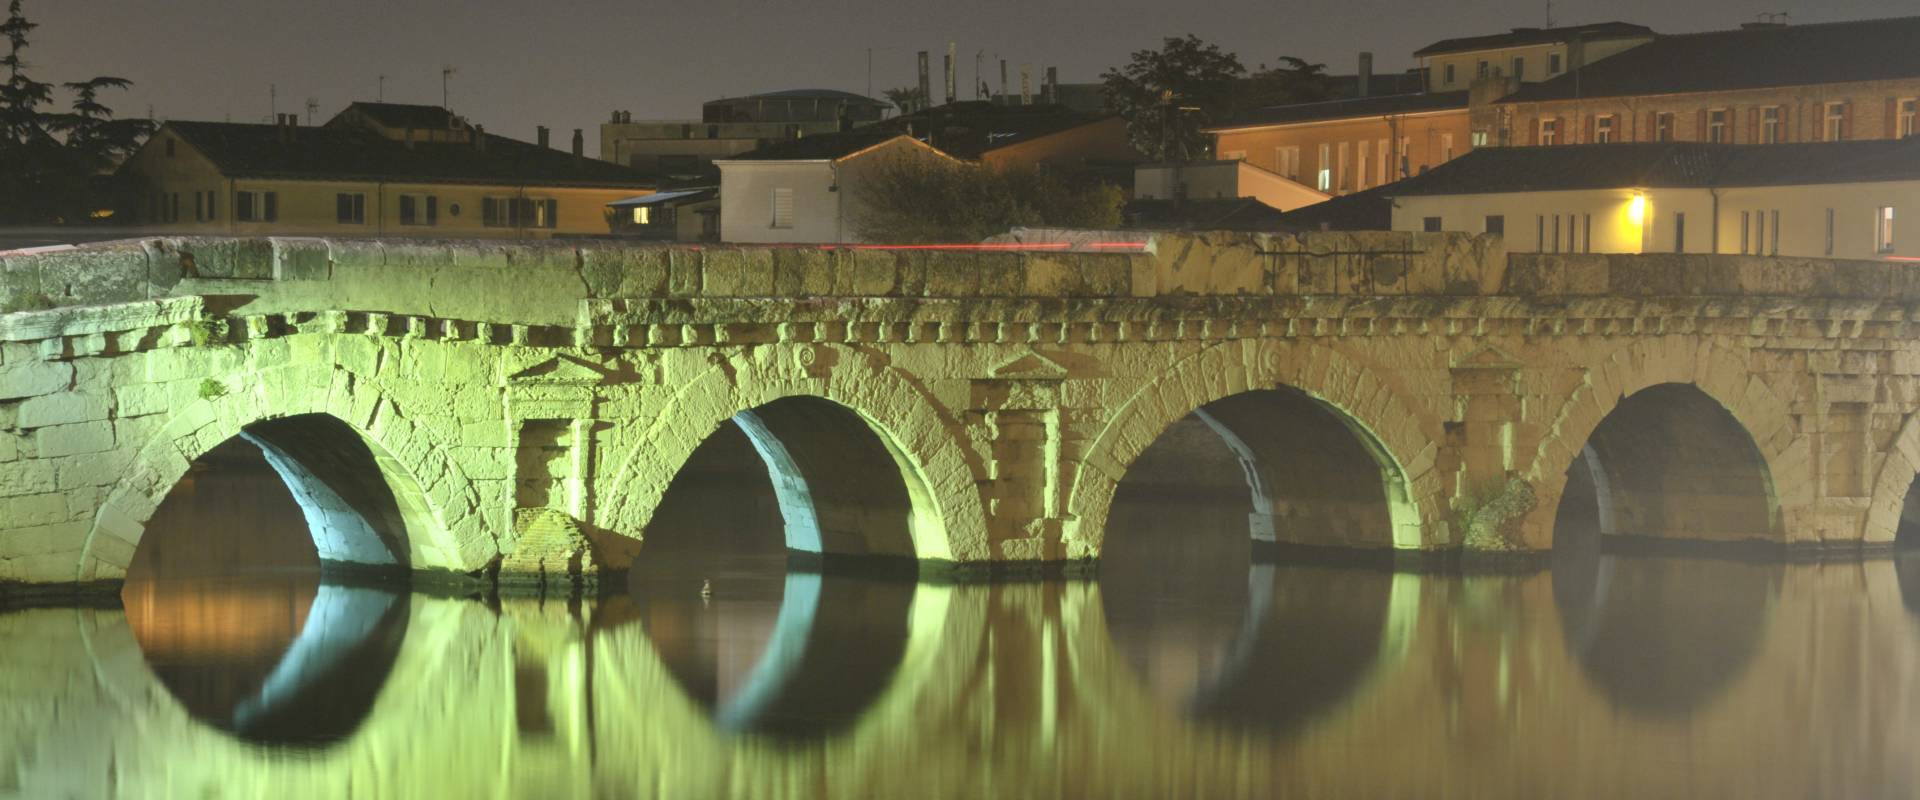 Ponte di Tiberio 2000 anni di storia photo by GianlucaMoretti